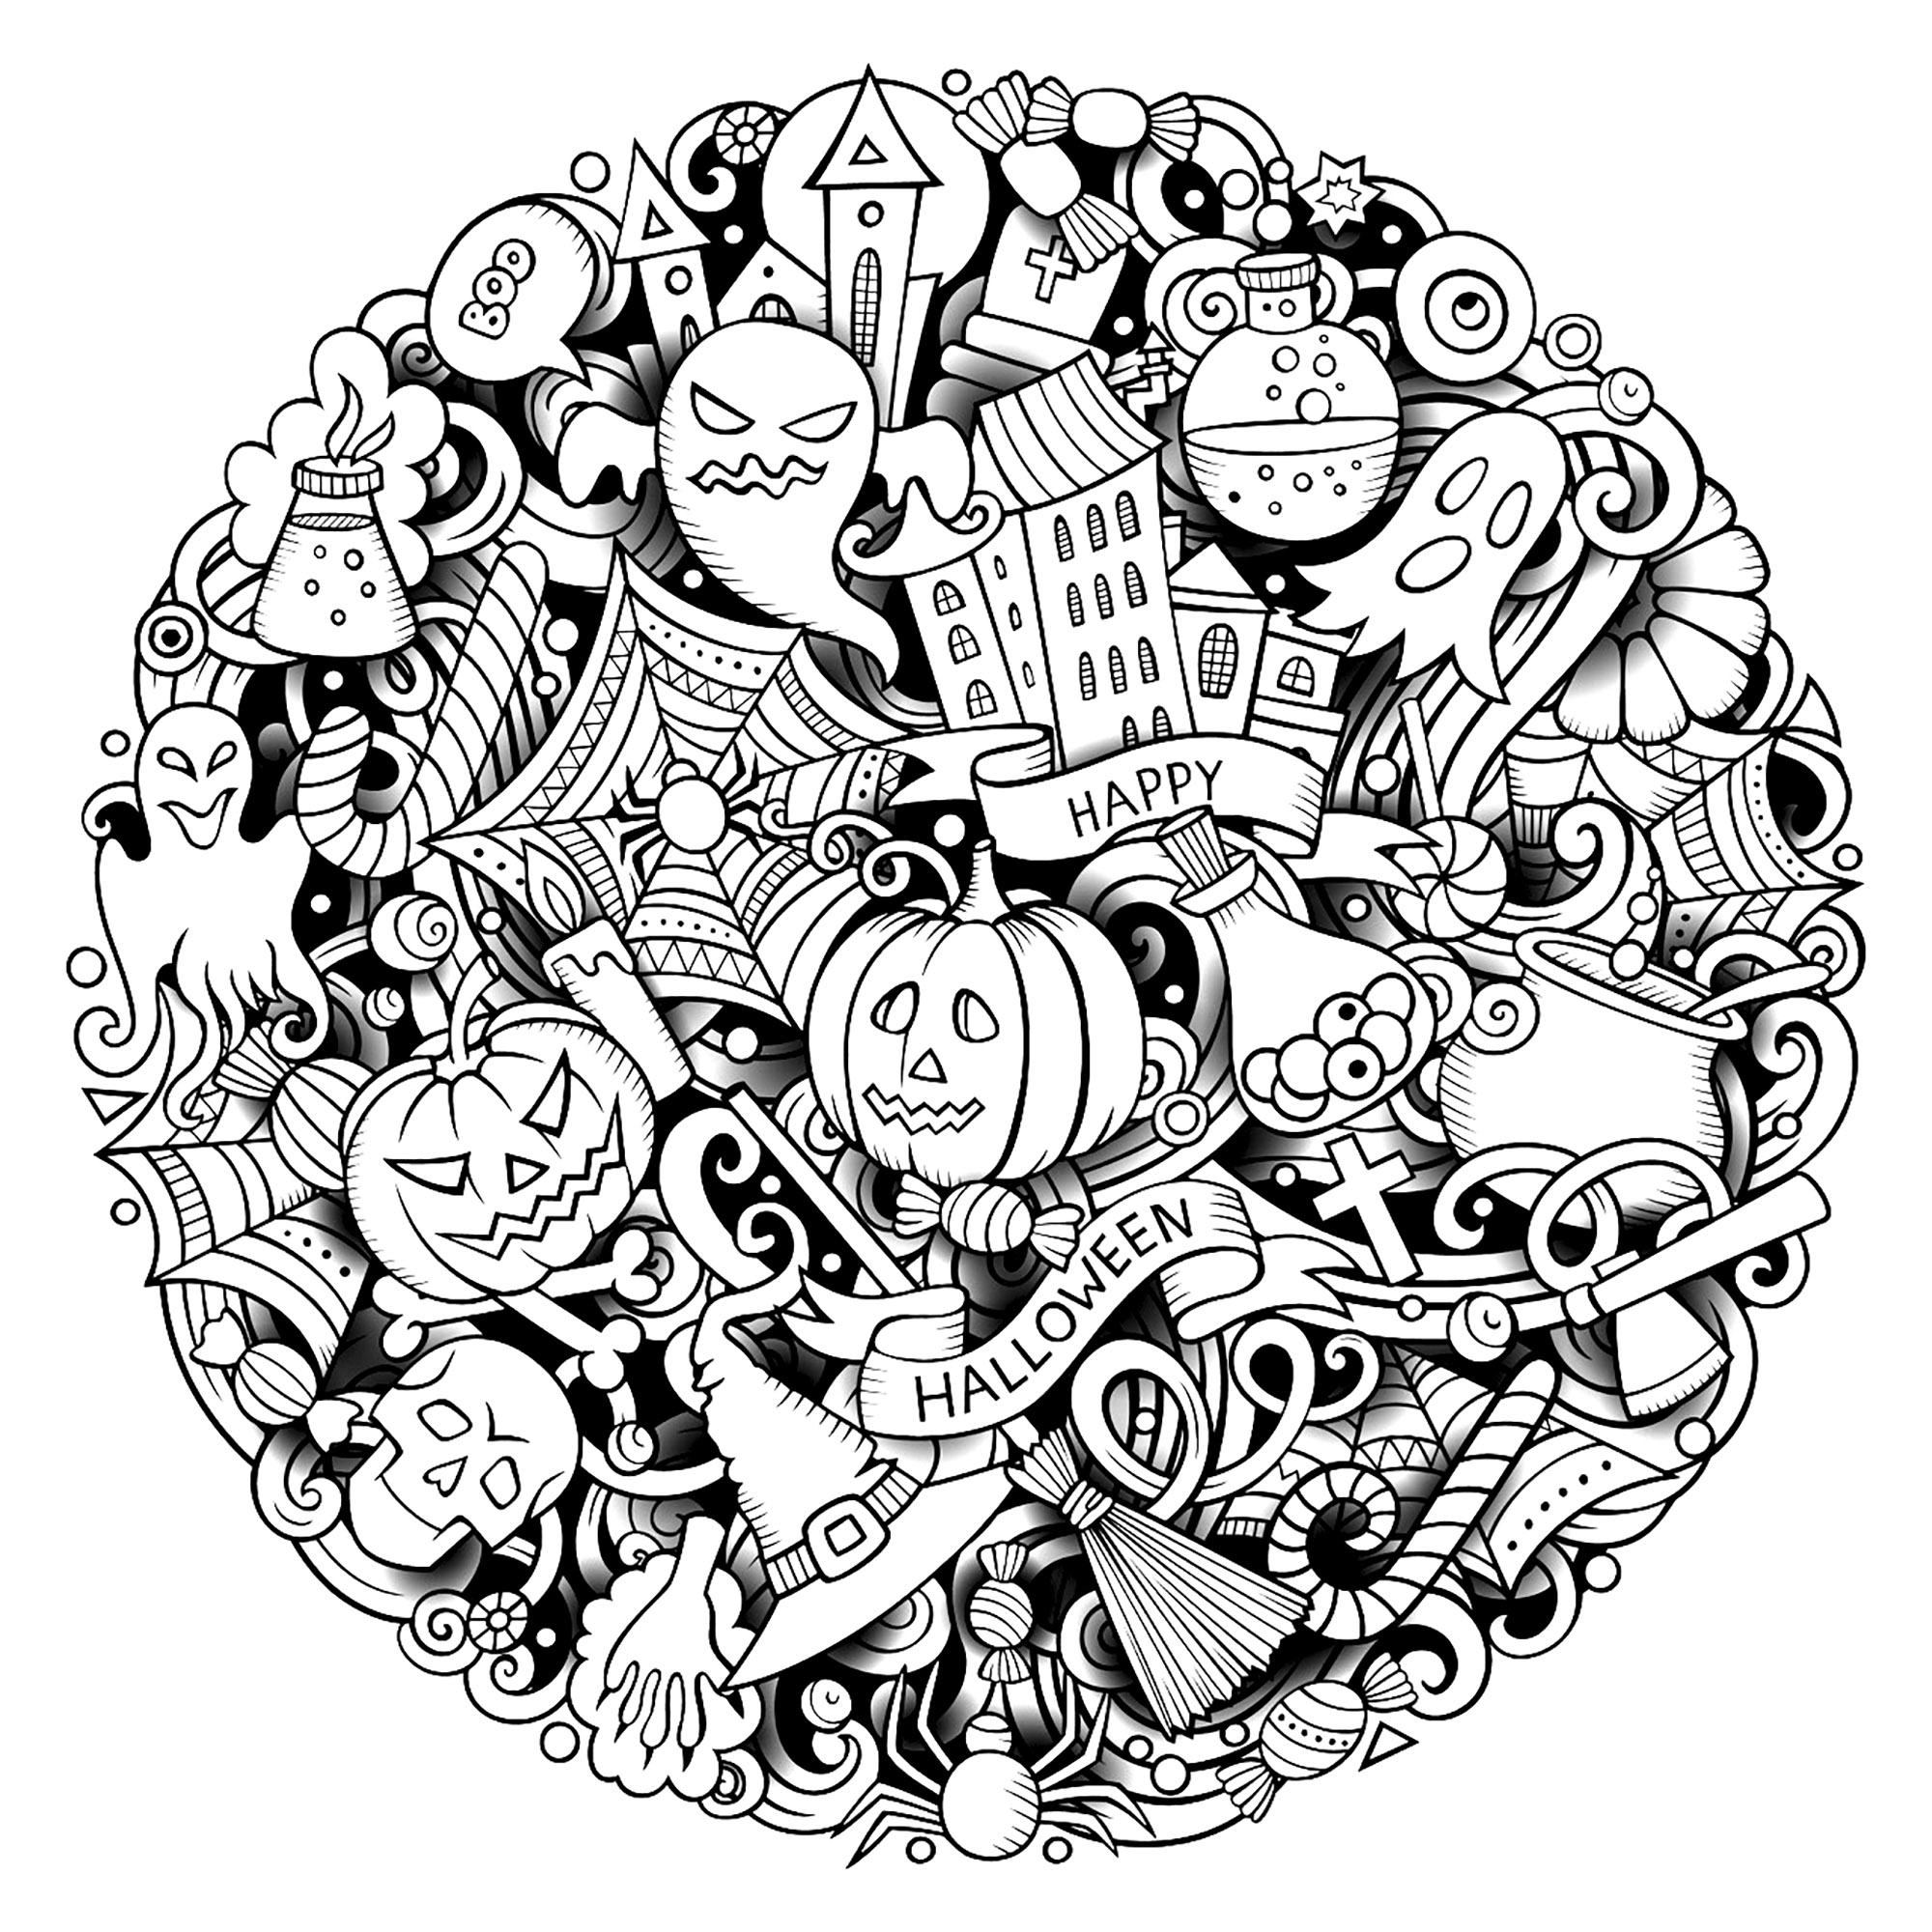 Uno scarabocchio di Halloween complesso. Diversi simboli e personaggi di Halloween in un Doodle circolare (zucche, fantasmi, scheletri, ragni, ecc.), Fonte : 123rf   Artista : Balabolka